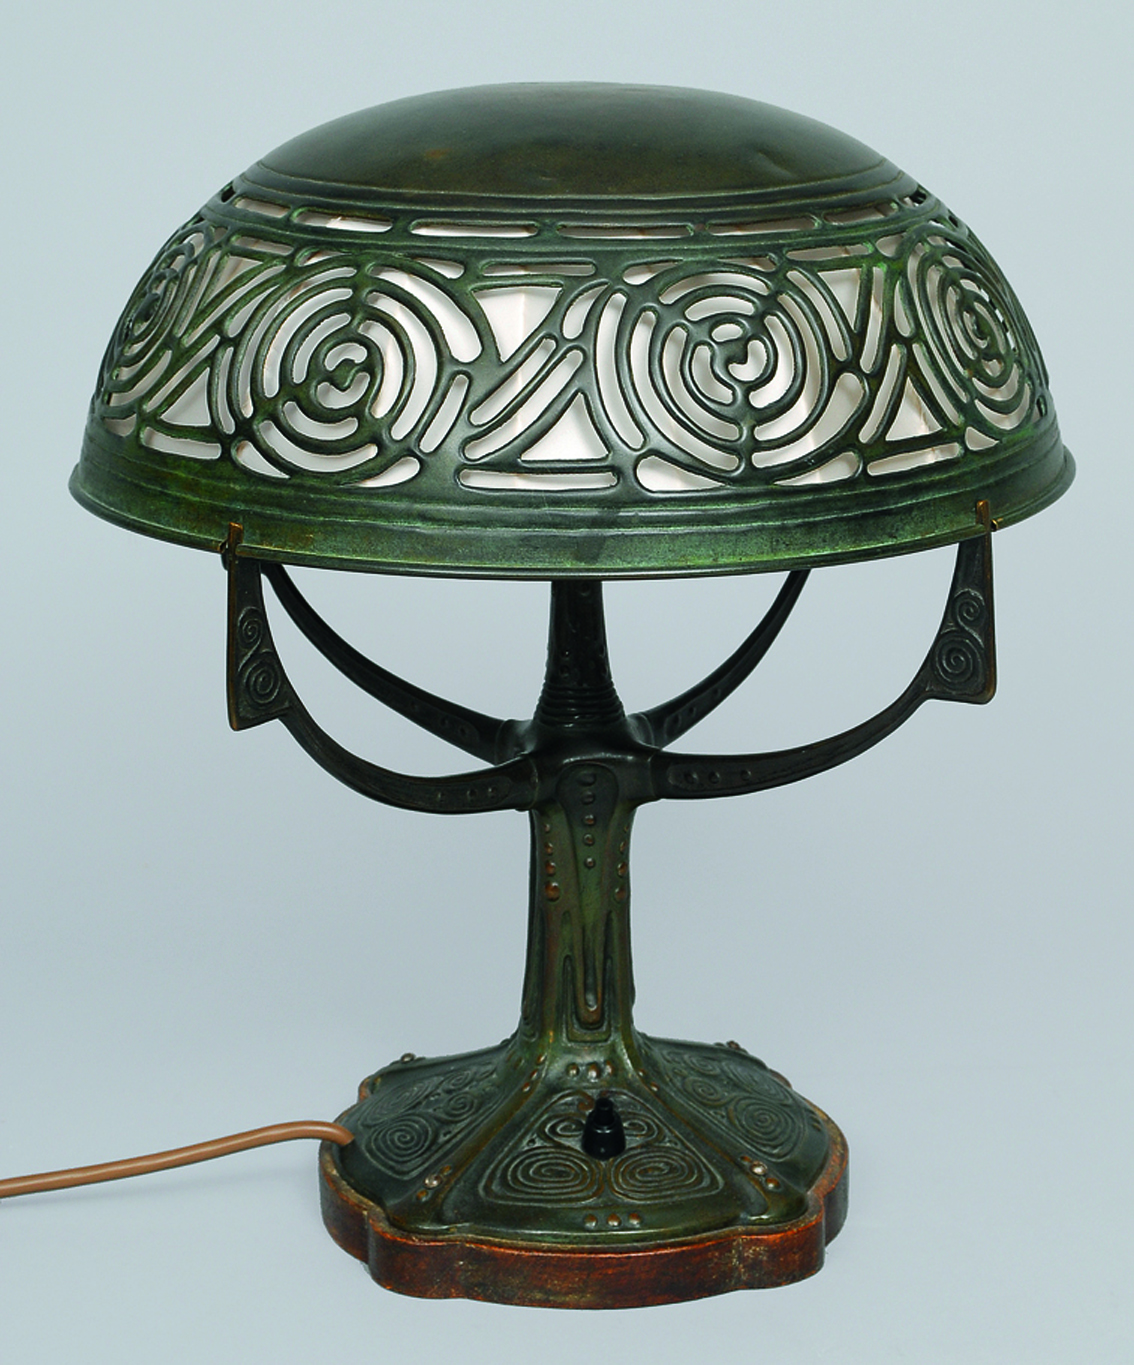 An art nouveau bronze table lamp